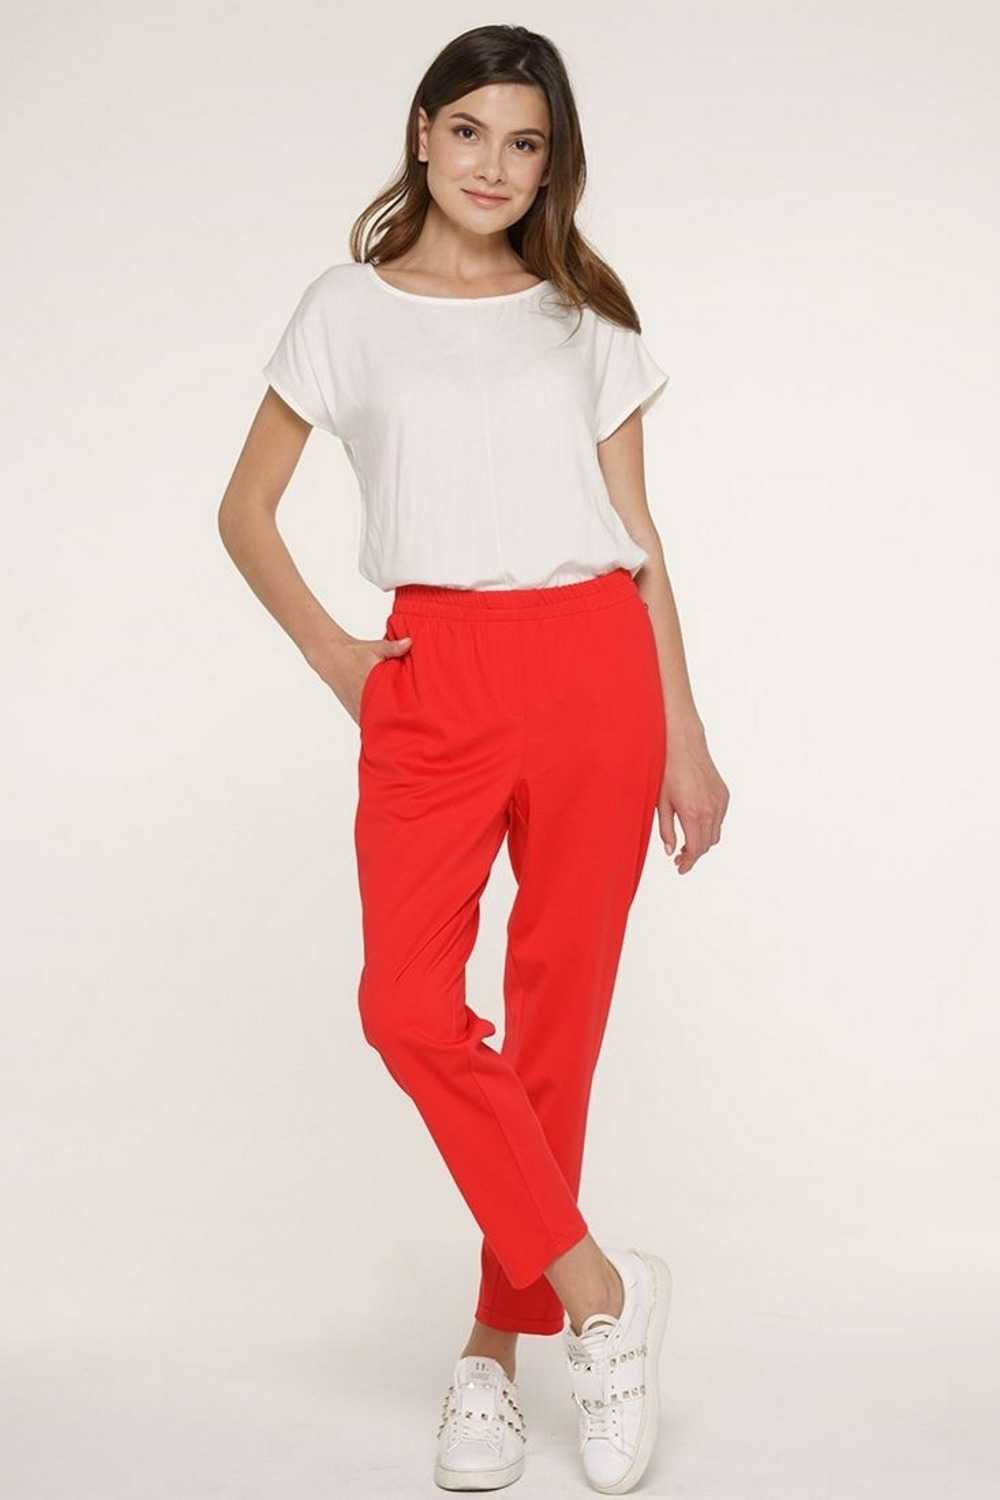 Соблазнительные красные брюки: 15 роскошных образов для лета 2021 - zhurnal-lady.com